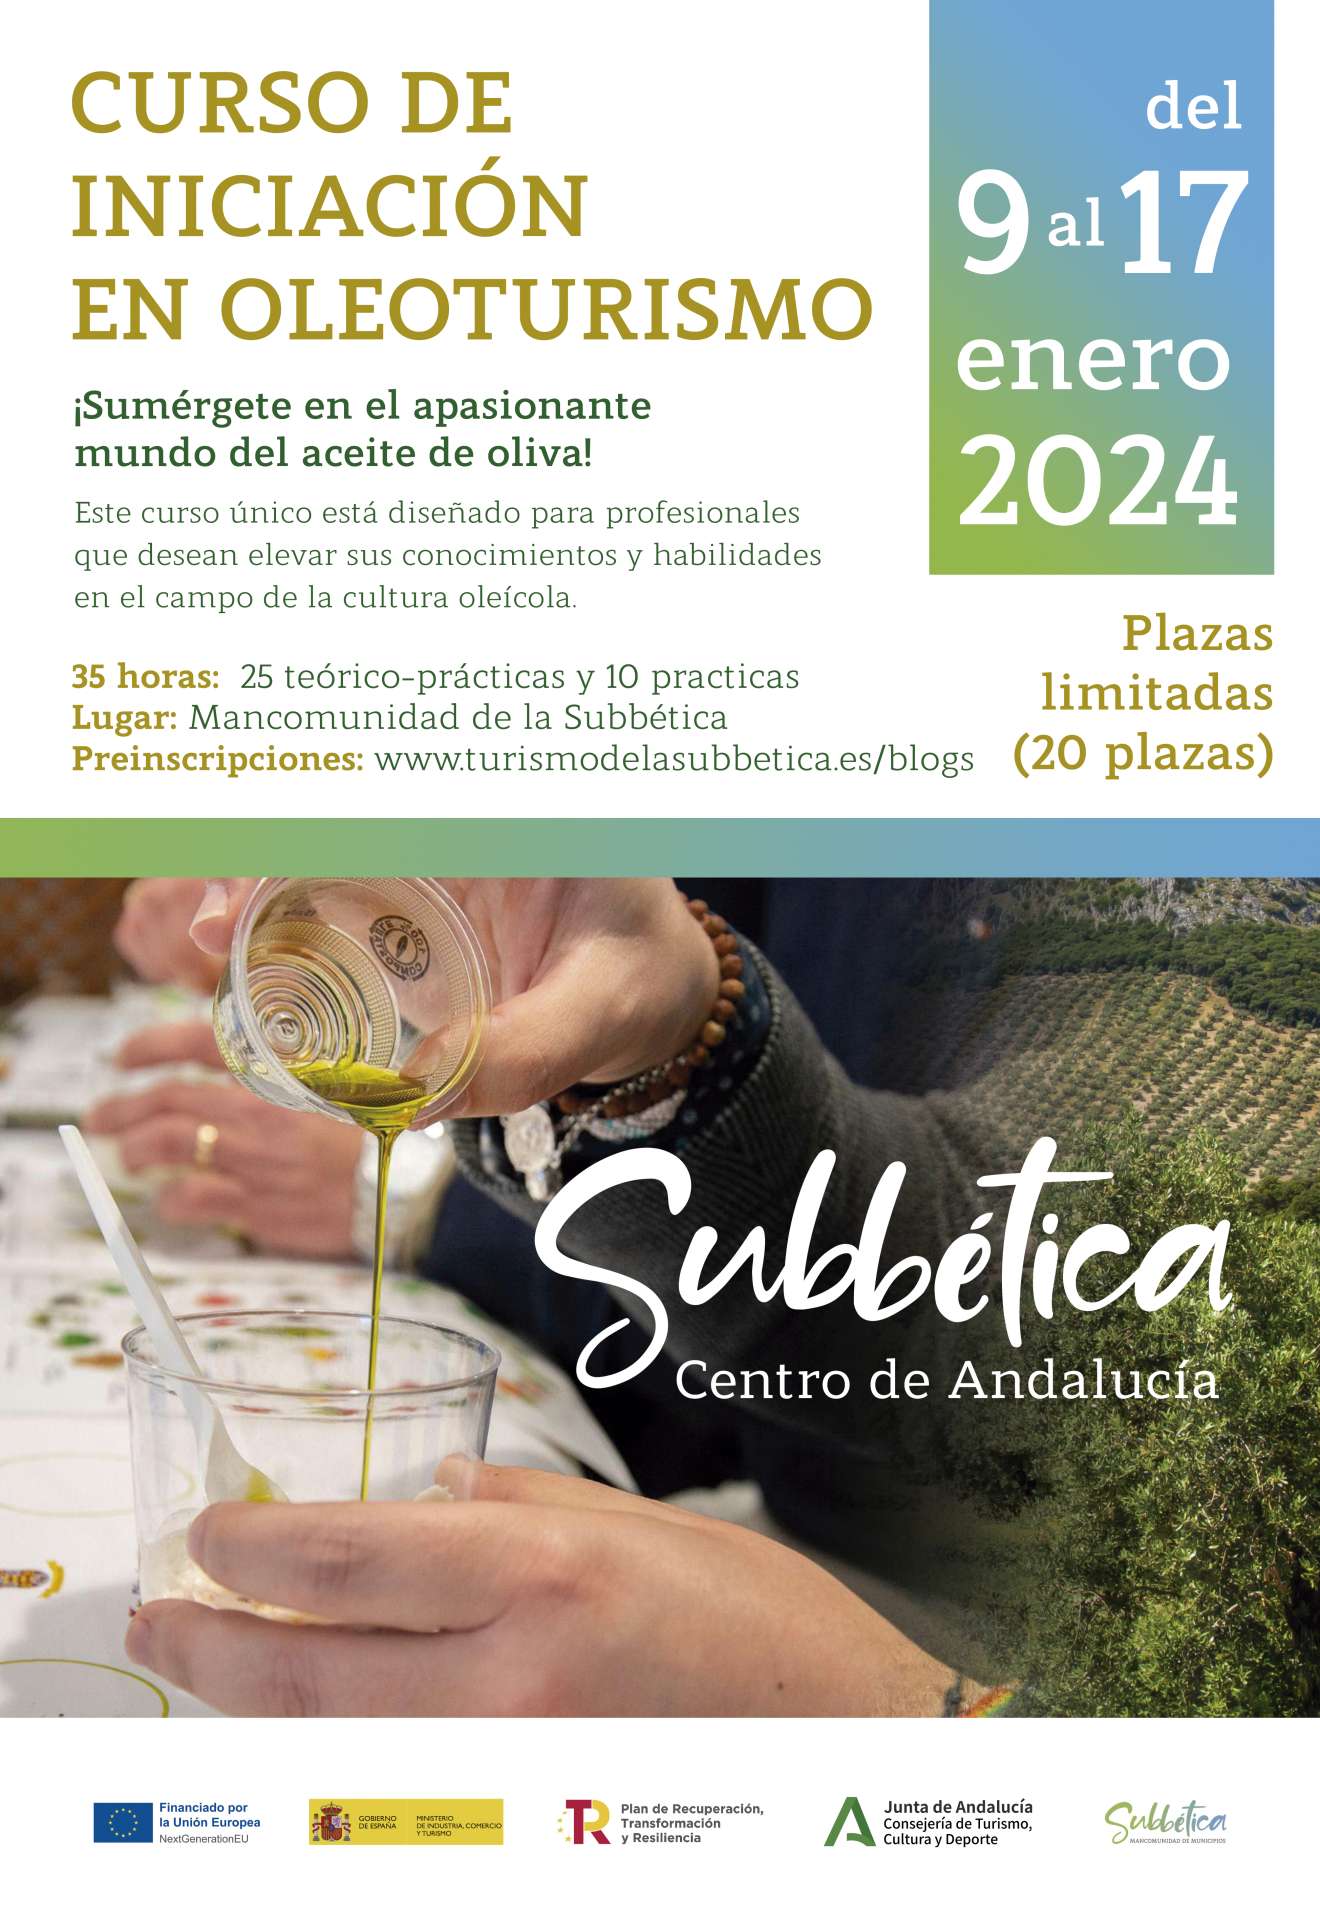 CURSO DE INICIACIÓN AL OLEOTURISMO: Sumérgete en la Cultura del Aceite de Oliva